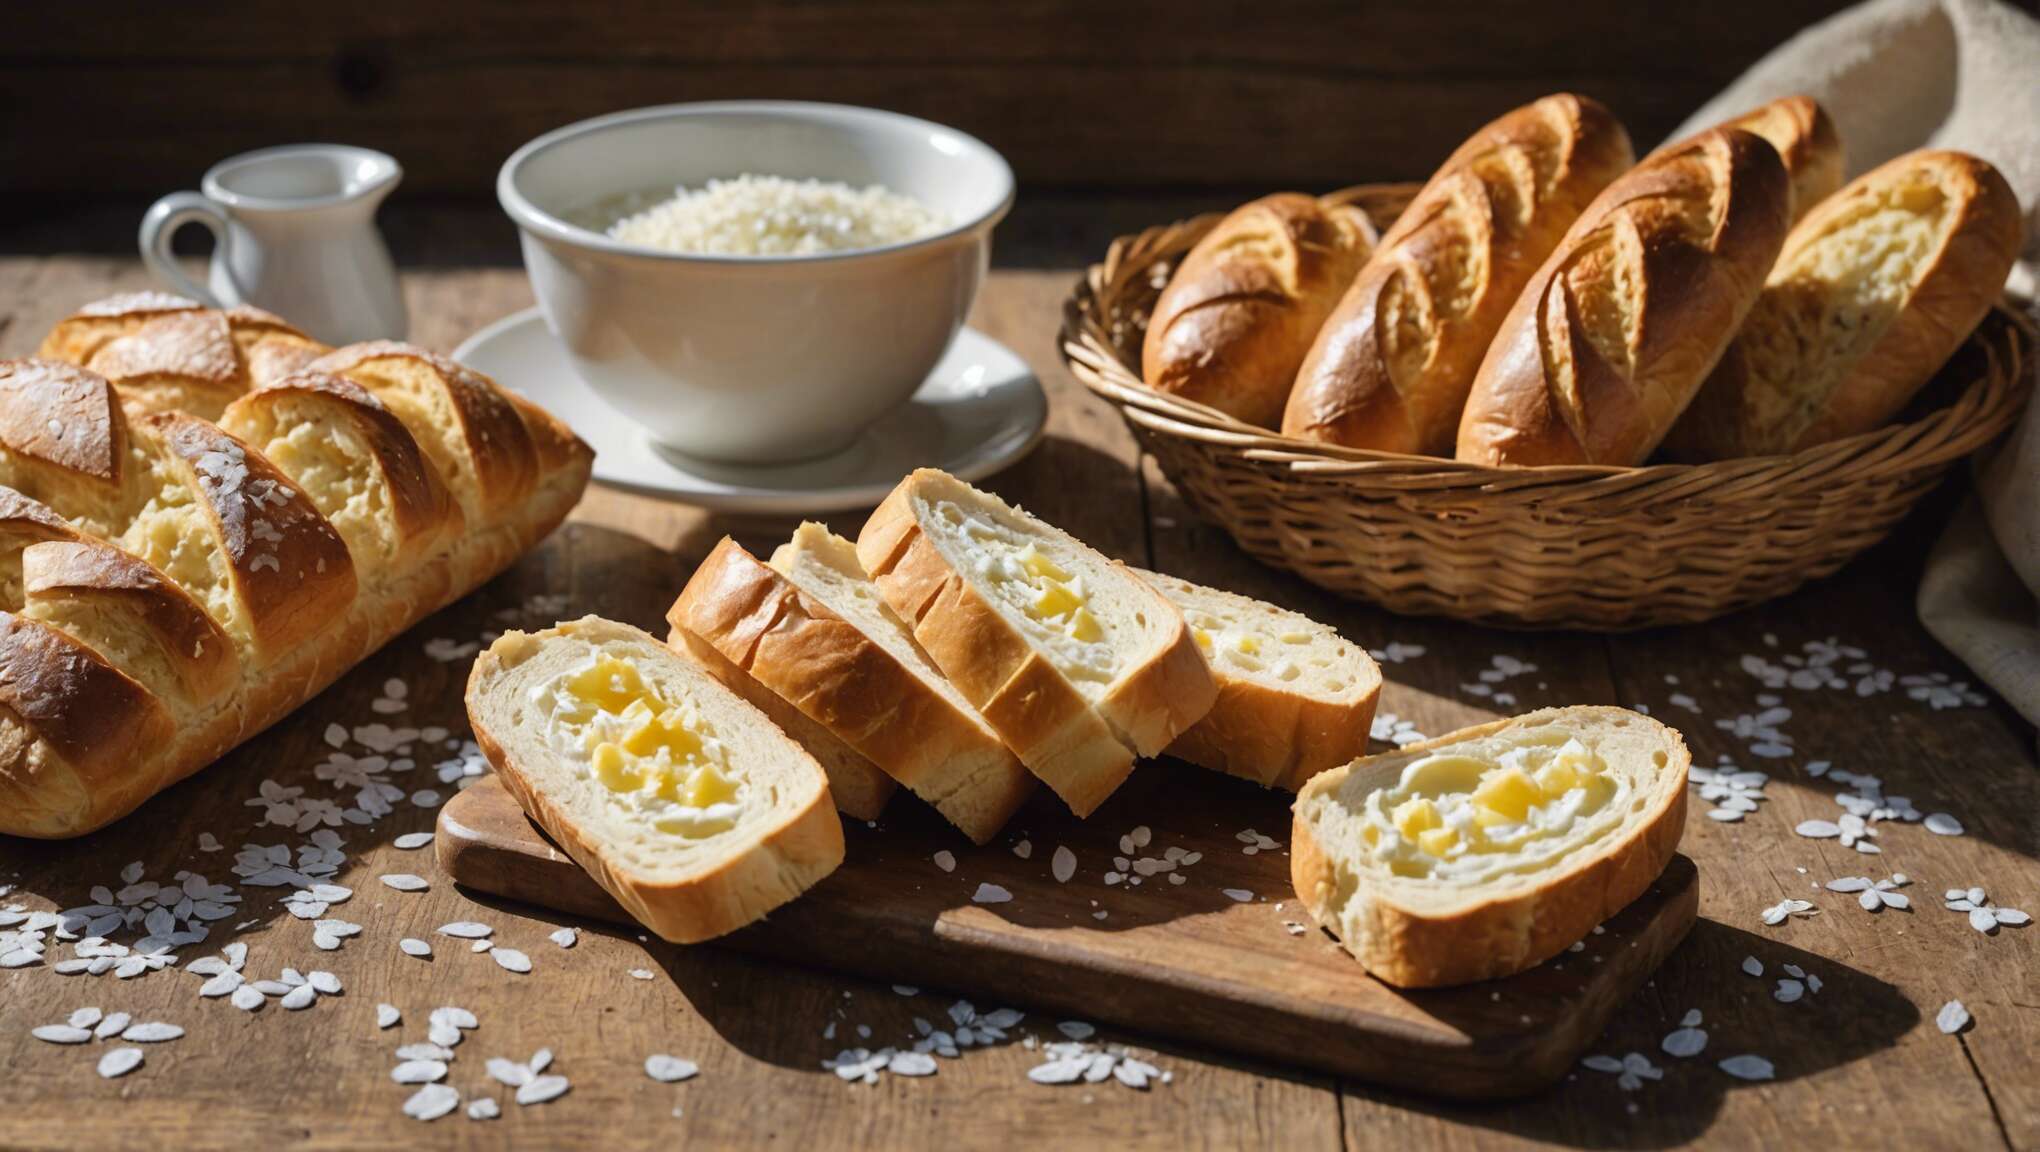 Le beurre salé : emblème gastronomique breton à l'honneur